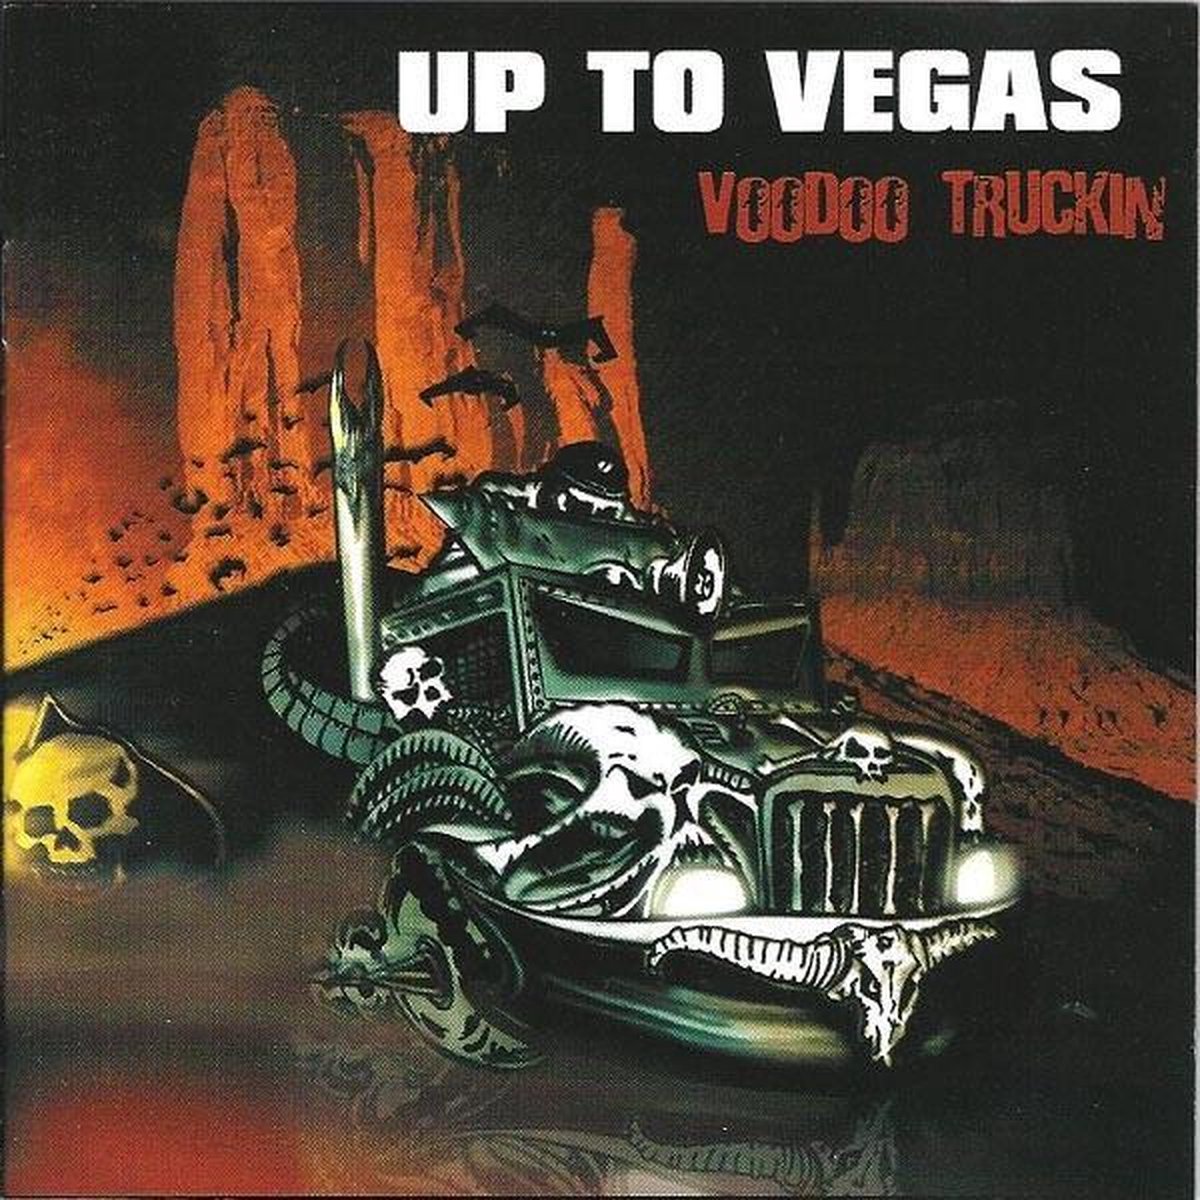 Up To Vegas - Voodoo Truckin (CD) - Up To Vegas